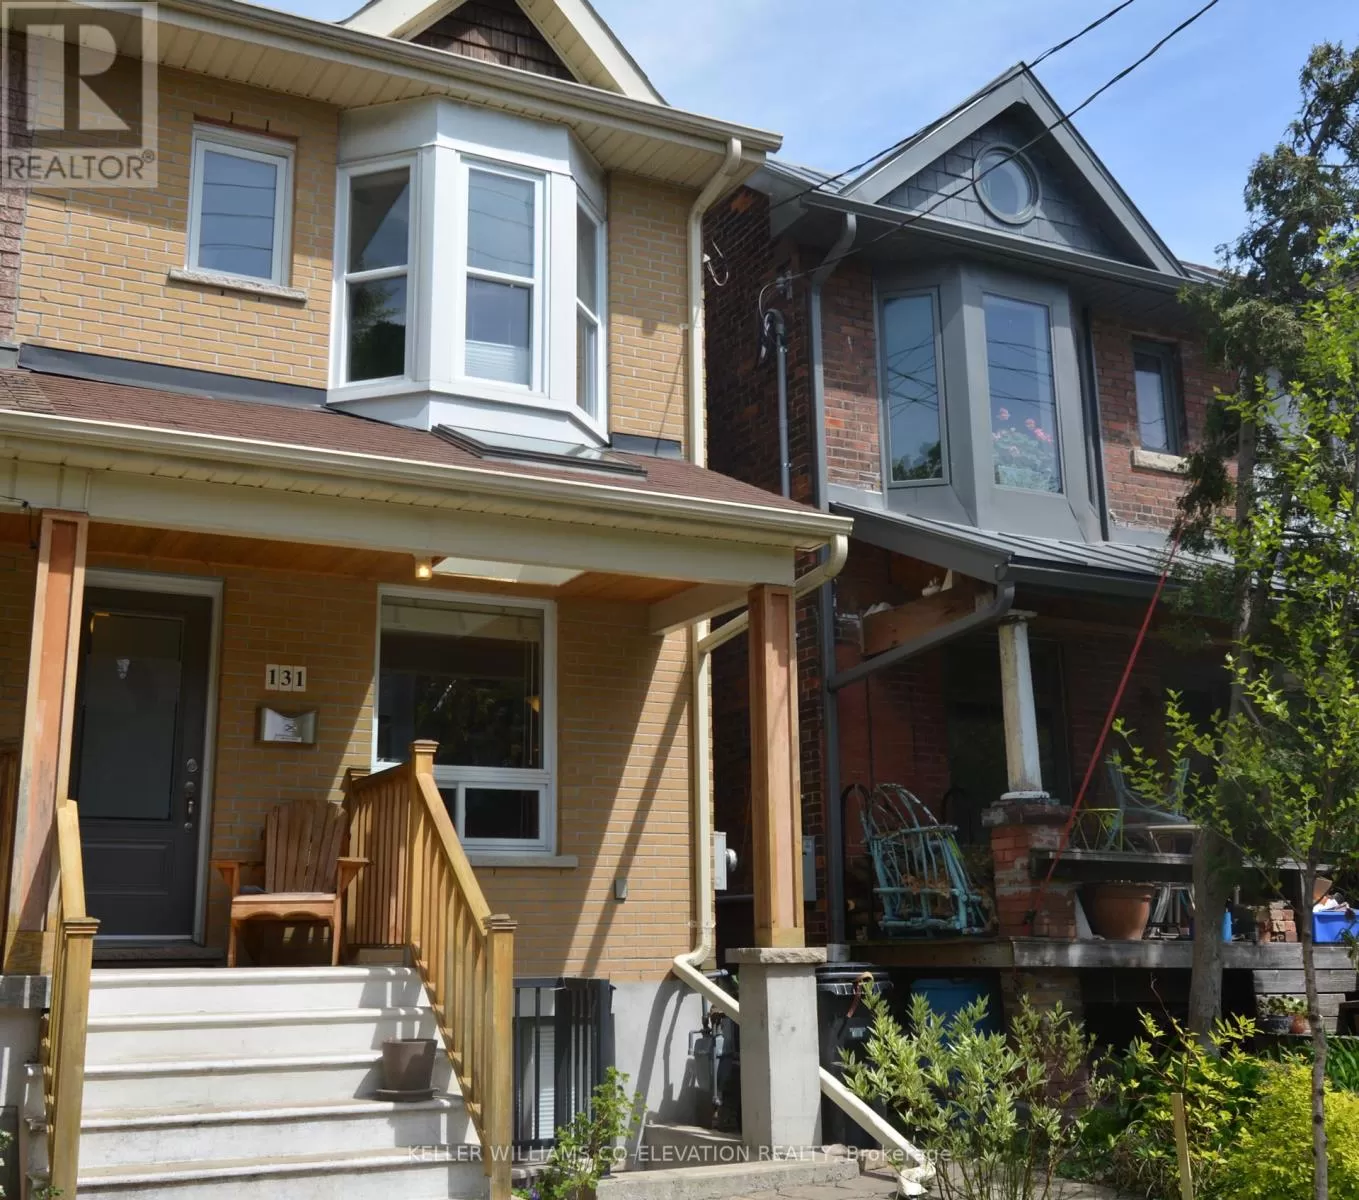 House for rent: 131 Campbell Avenue, Toronto, Ontario M6P 3V1